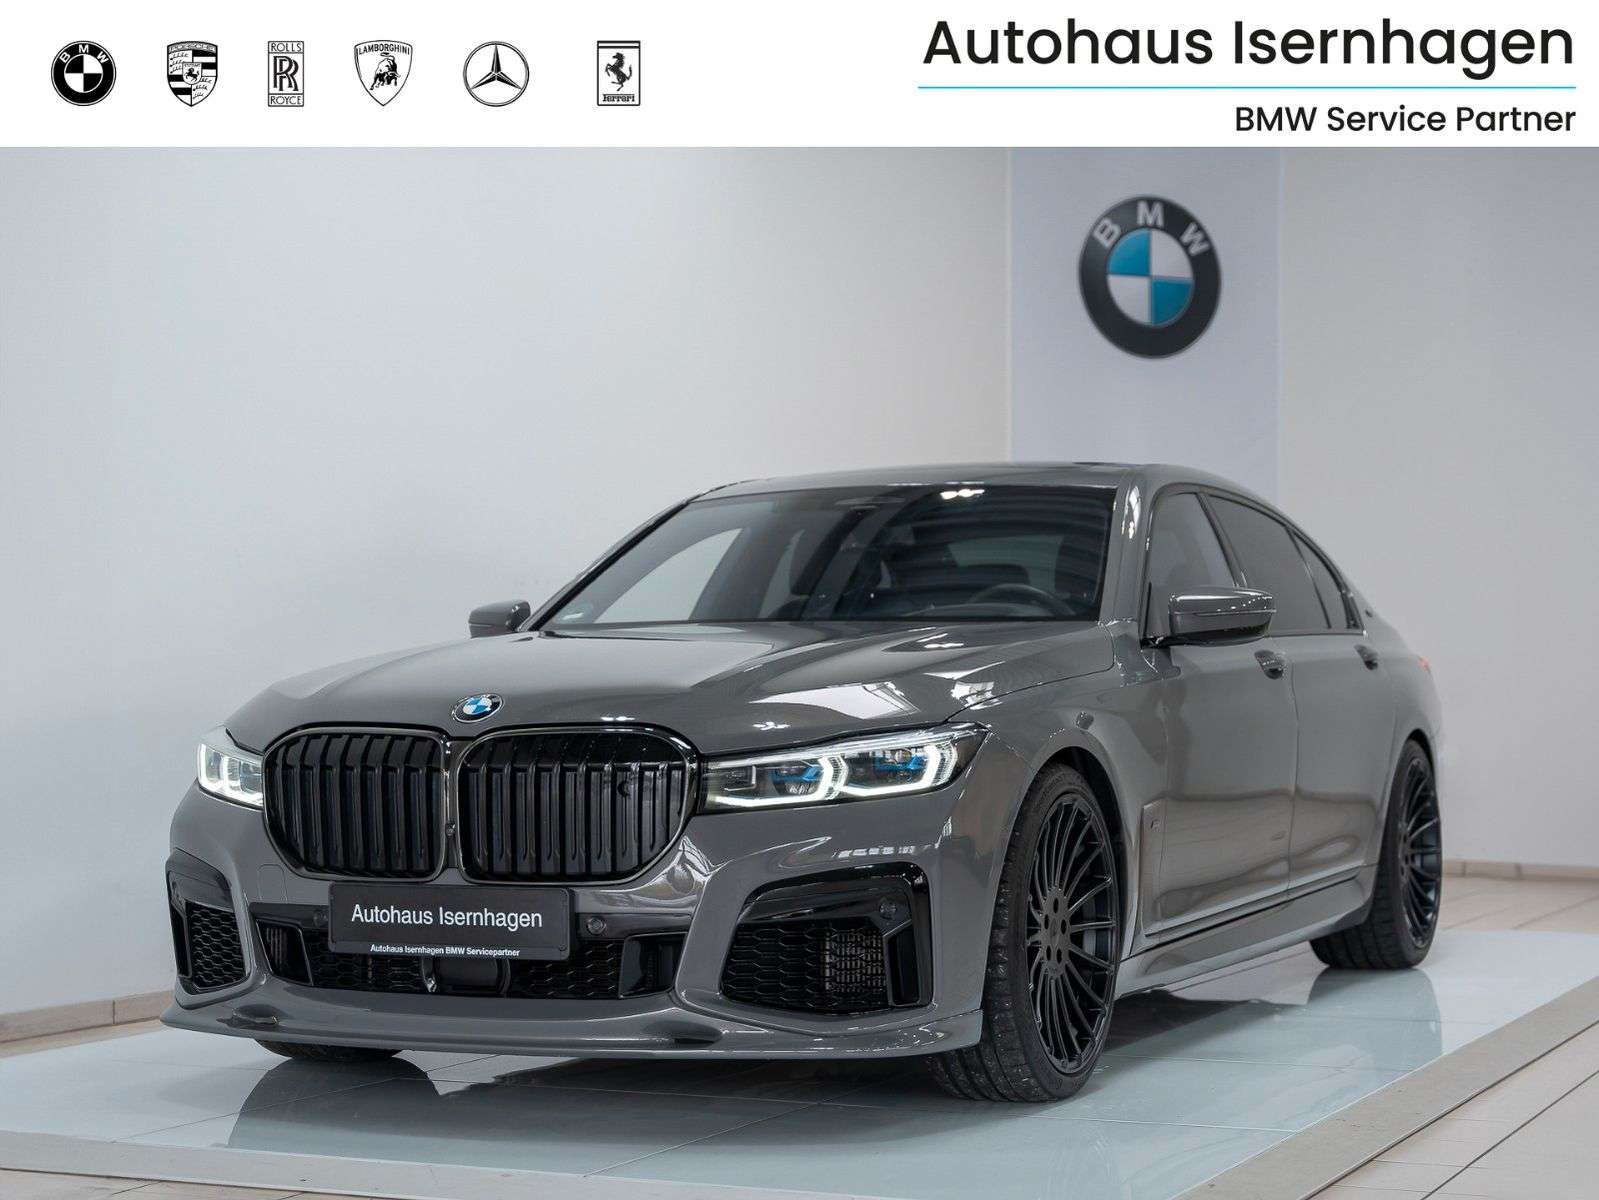 BMW 760 Sedan in Grey used in Isernhagen for € 104,999.-